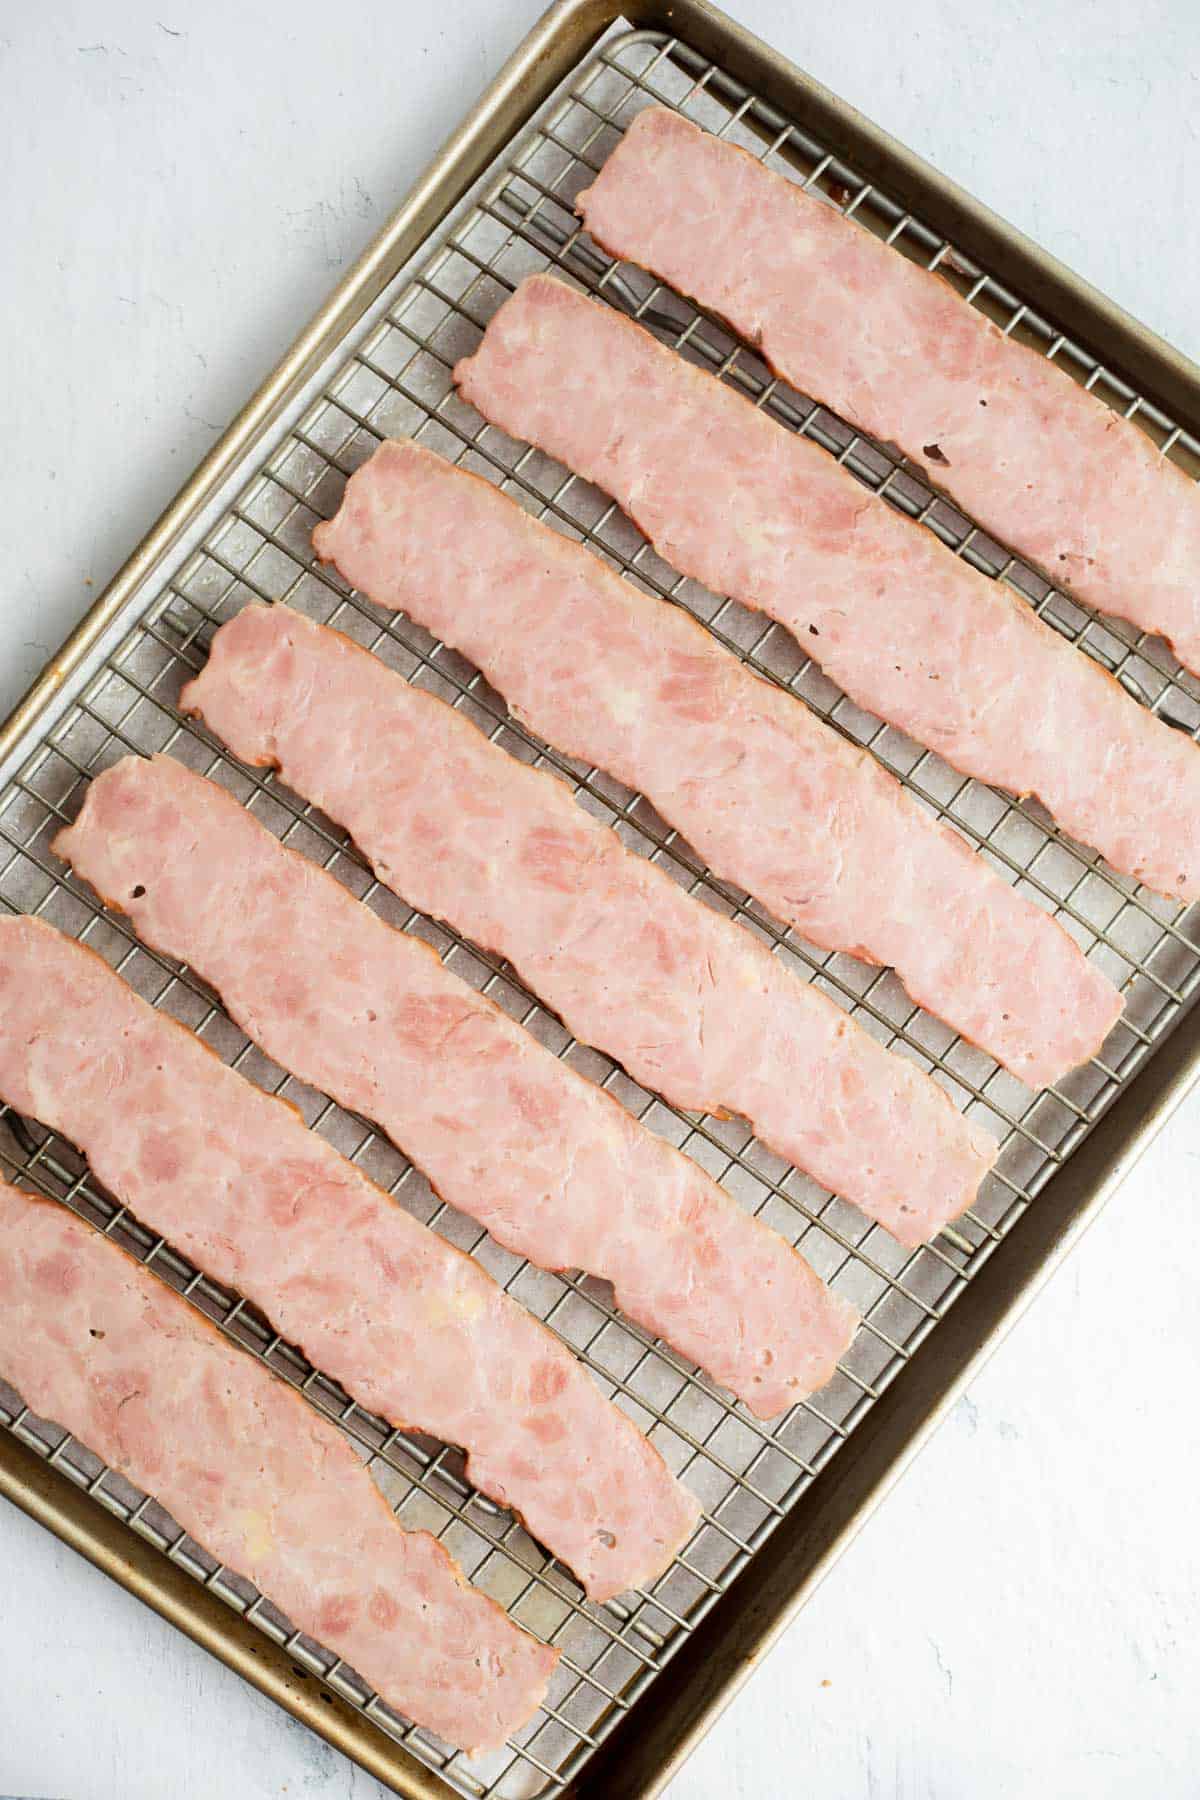 raw rashers of turkey bacon on wire rack in baking sheet.